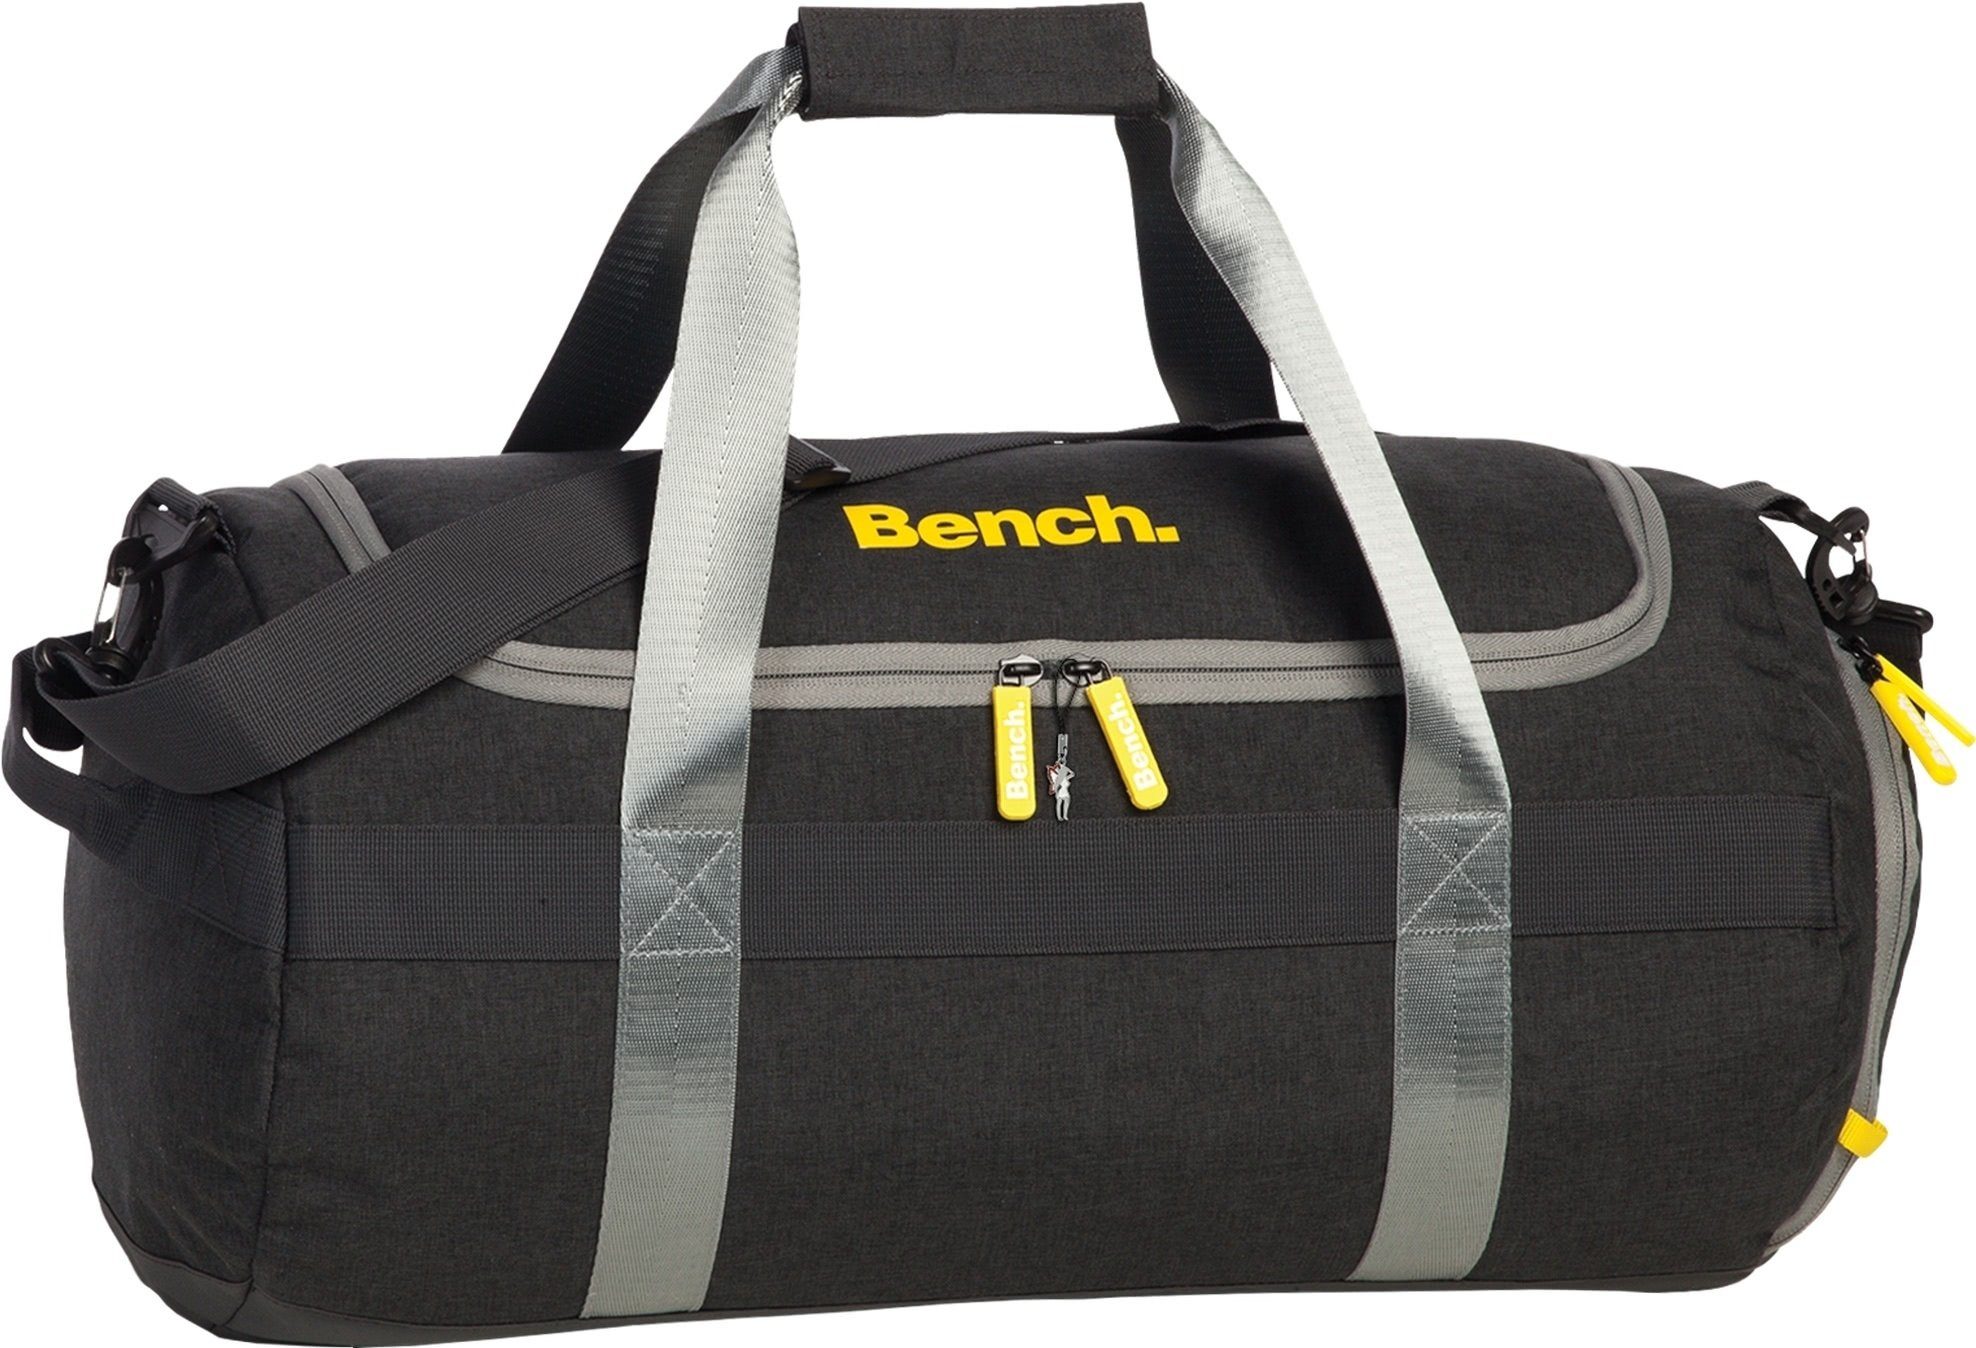 Bench. Sporttasche Bench stylische Sporttasche anthrazit (Reisetasche), Herren, Damen, Jugen Reisetasche, Sporttasche Polyester, schwarz, an | Sporttaschen